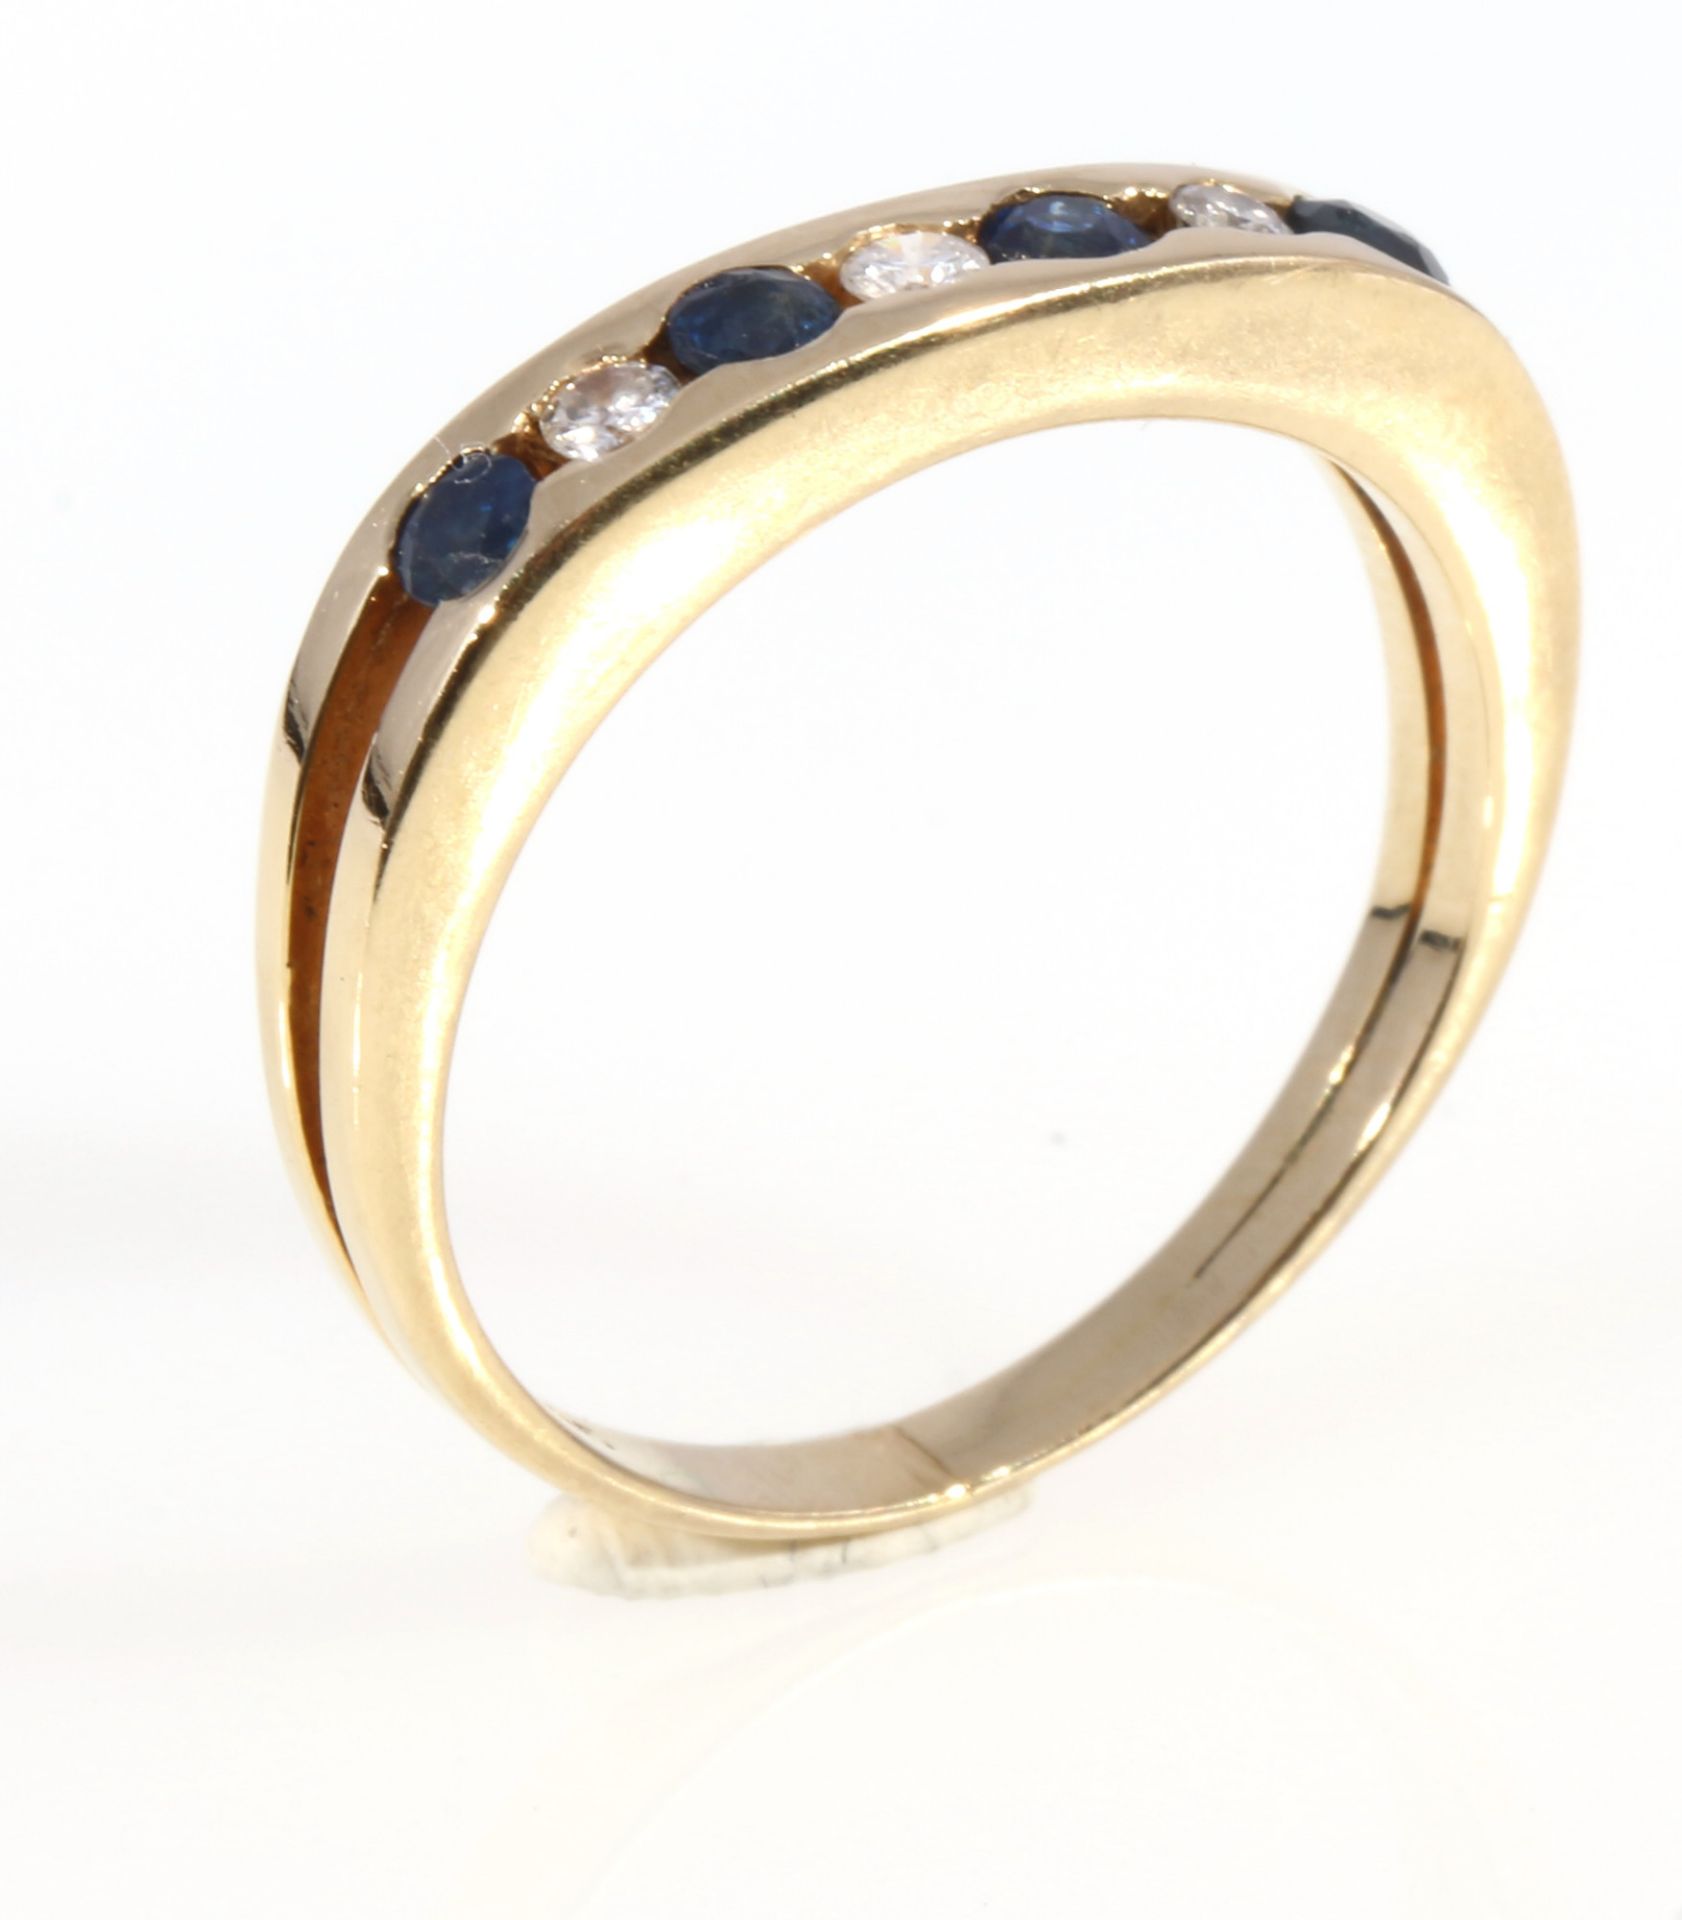 585 Gold Ring mit Saphiren und Brillanten, 14K gold ring sapphires and diamonds, - Image 2 of 3